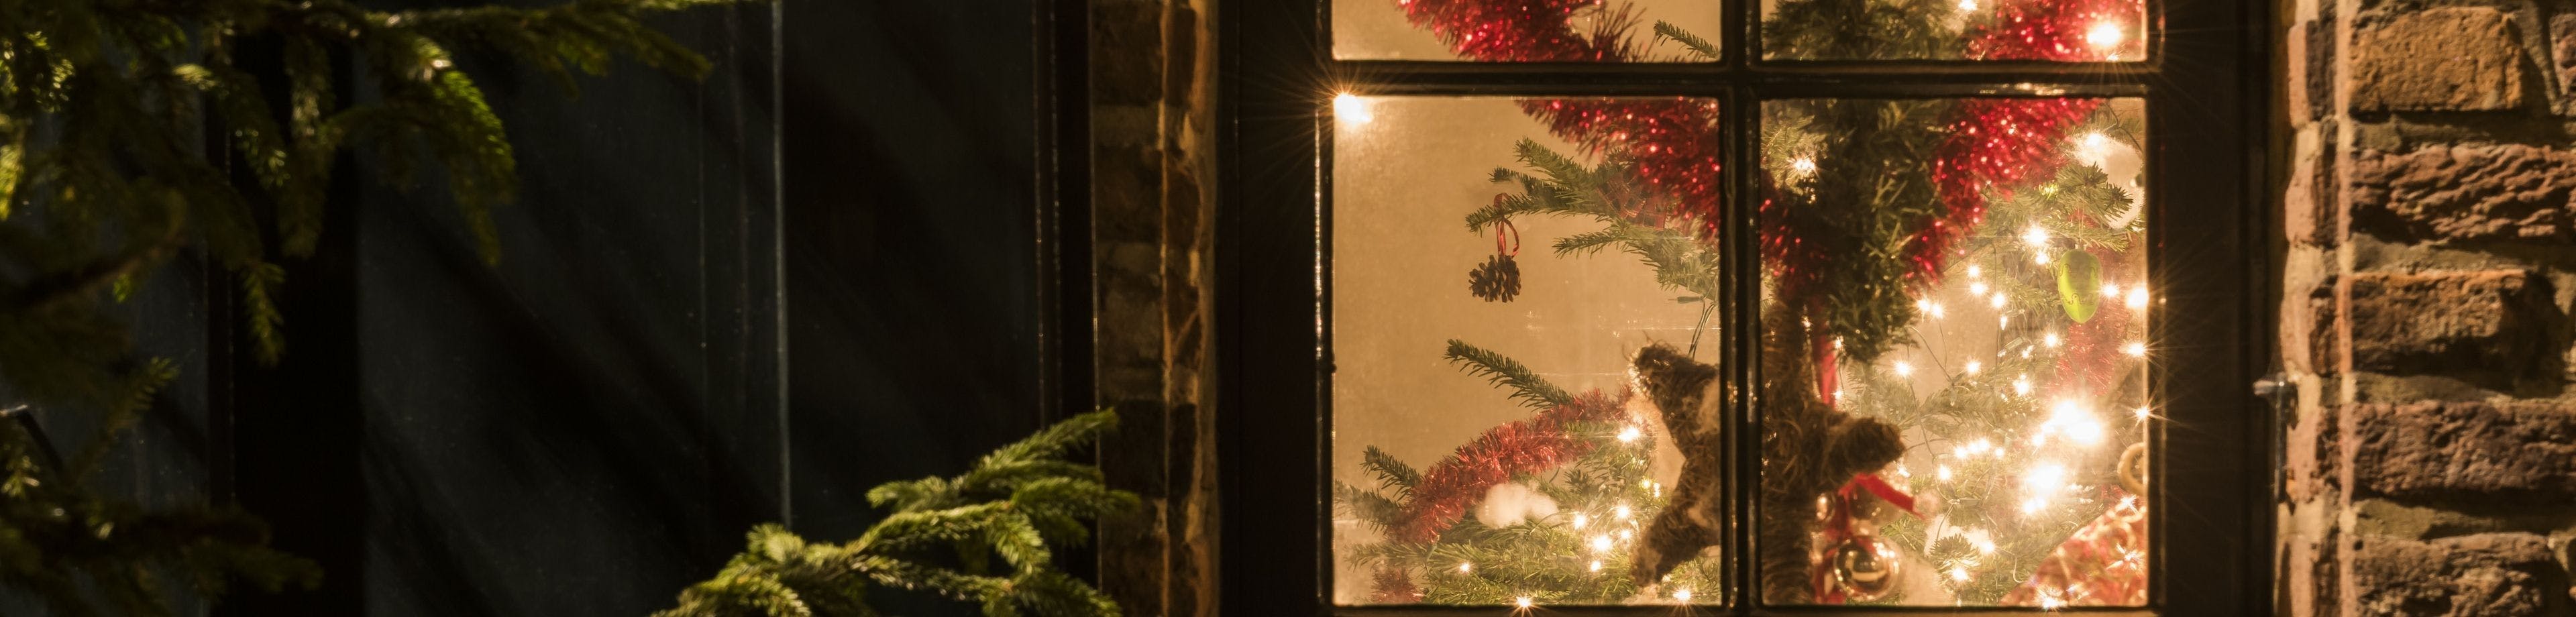 Raam van een woning waardoor een versierde kerstboom te zien is